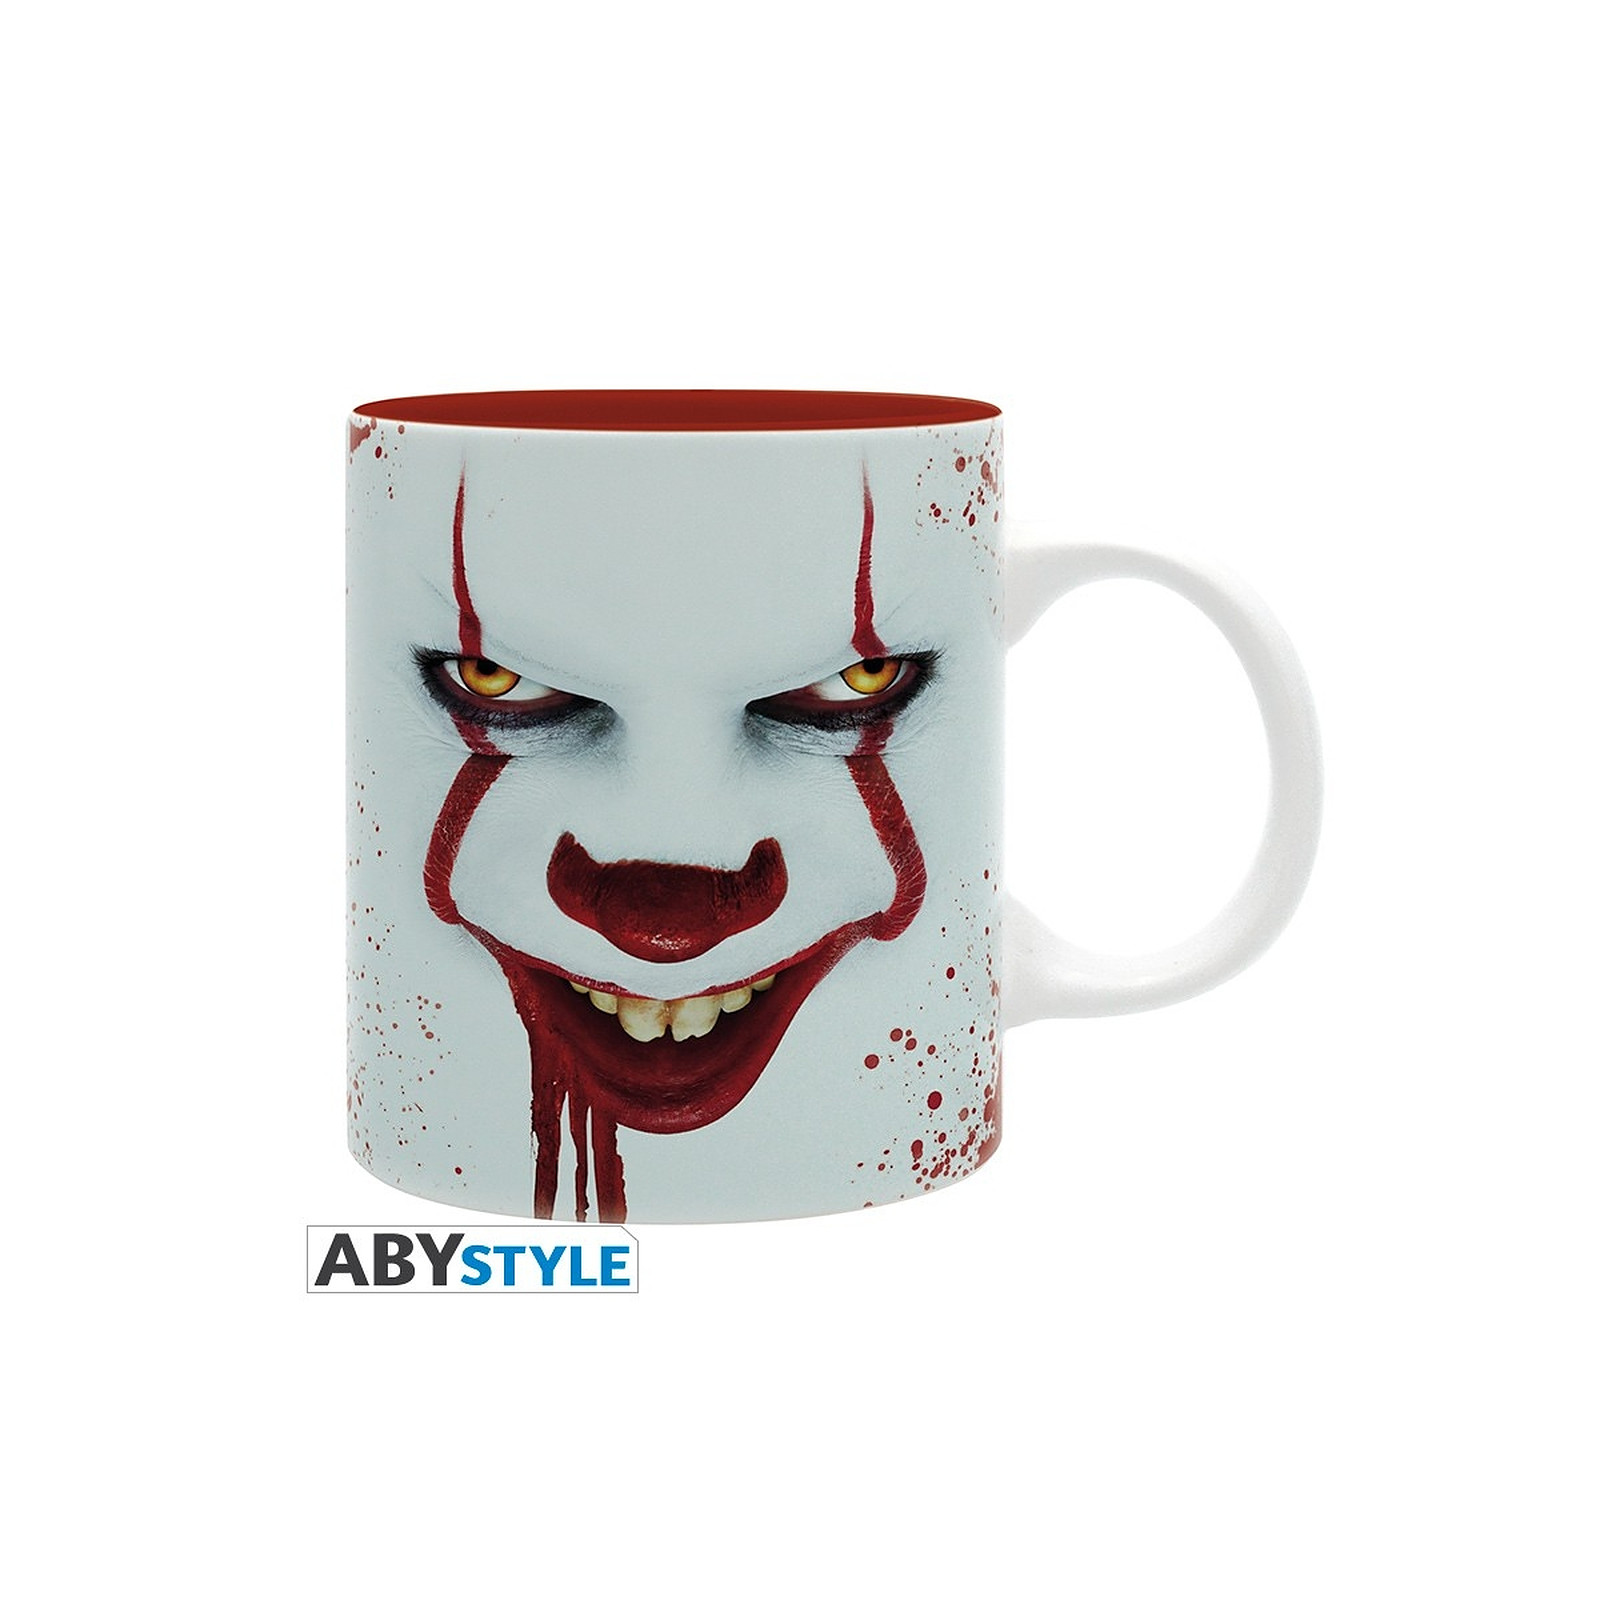 aa - Mug Gripsou & ballons - Mugs Abystyle